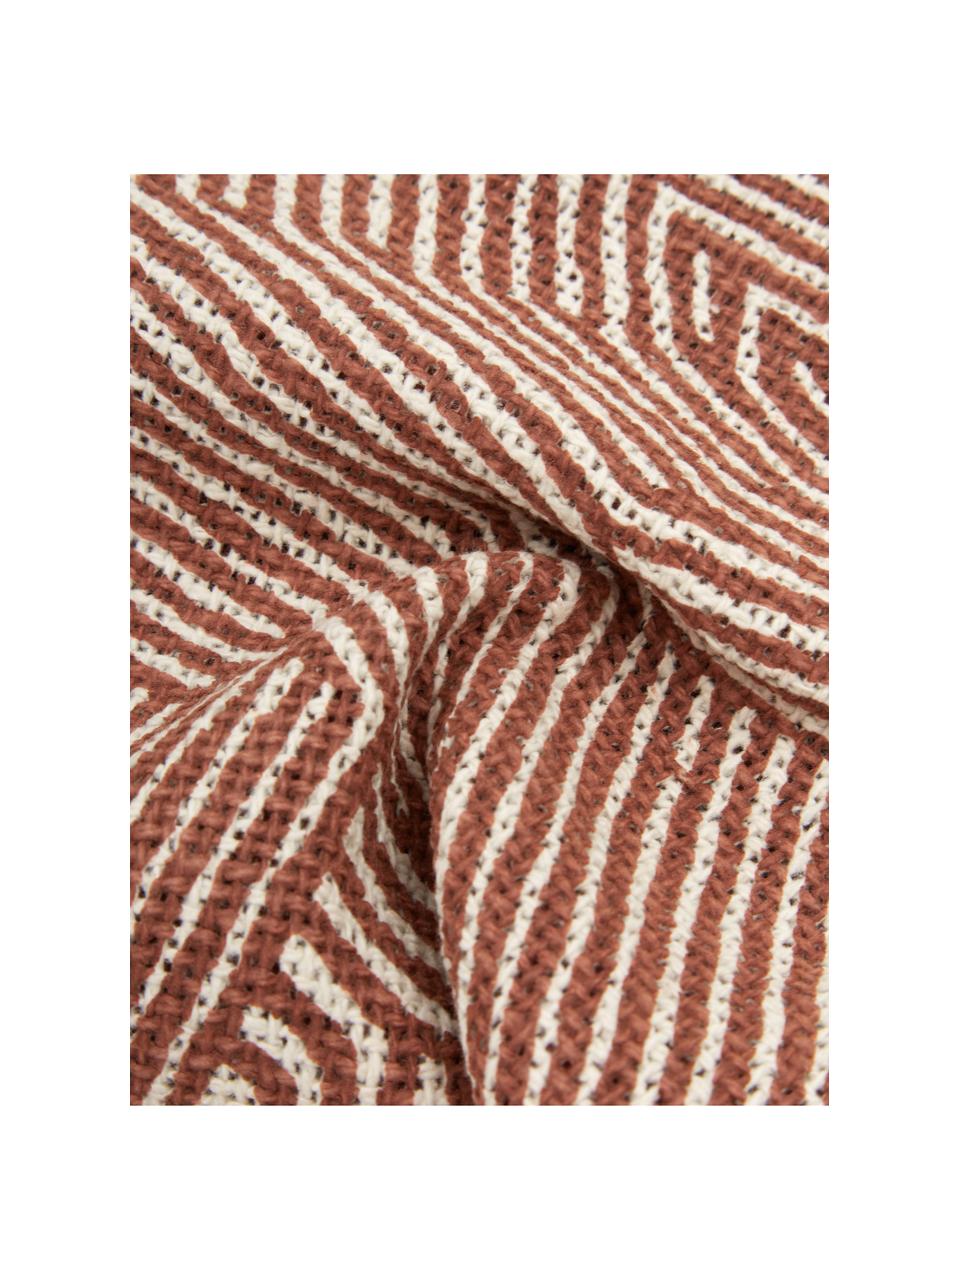 Kissenhülle Nadia mit grafischem Muster in Rostfarben, 100%  Baumwolle, Beige,Weiß,Rot, B 30 x L 50 cm